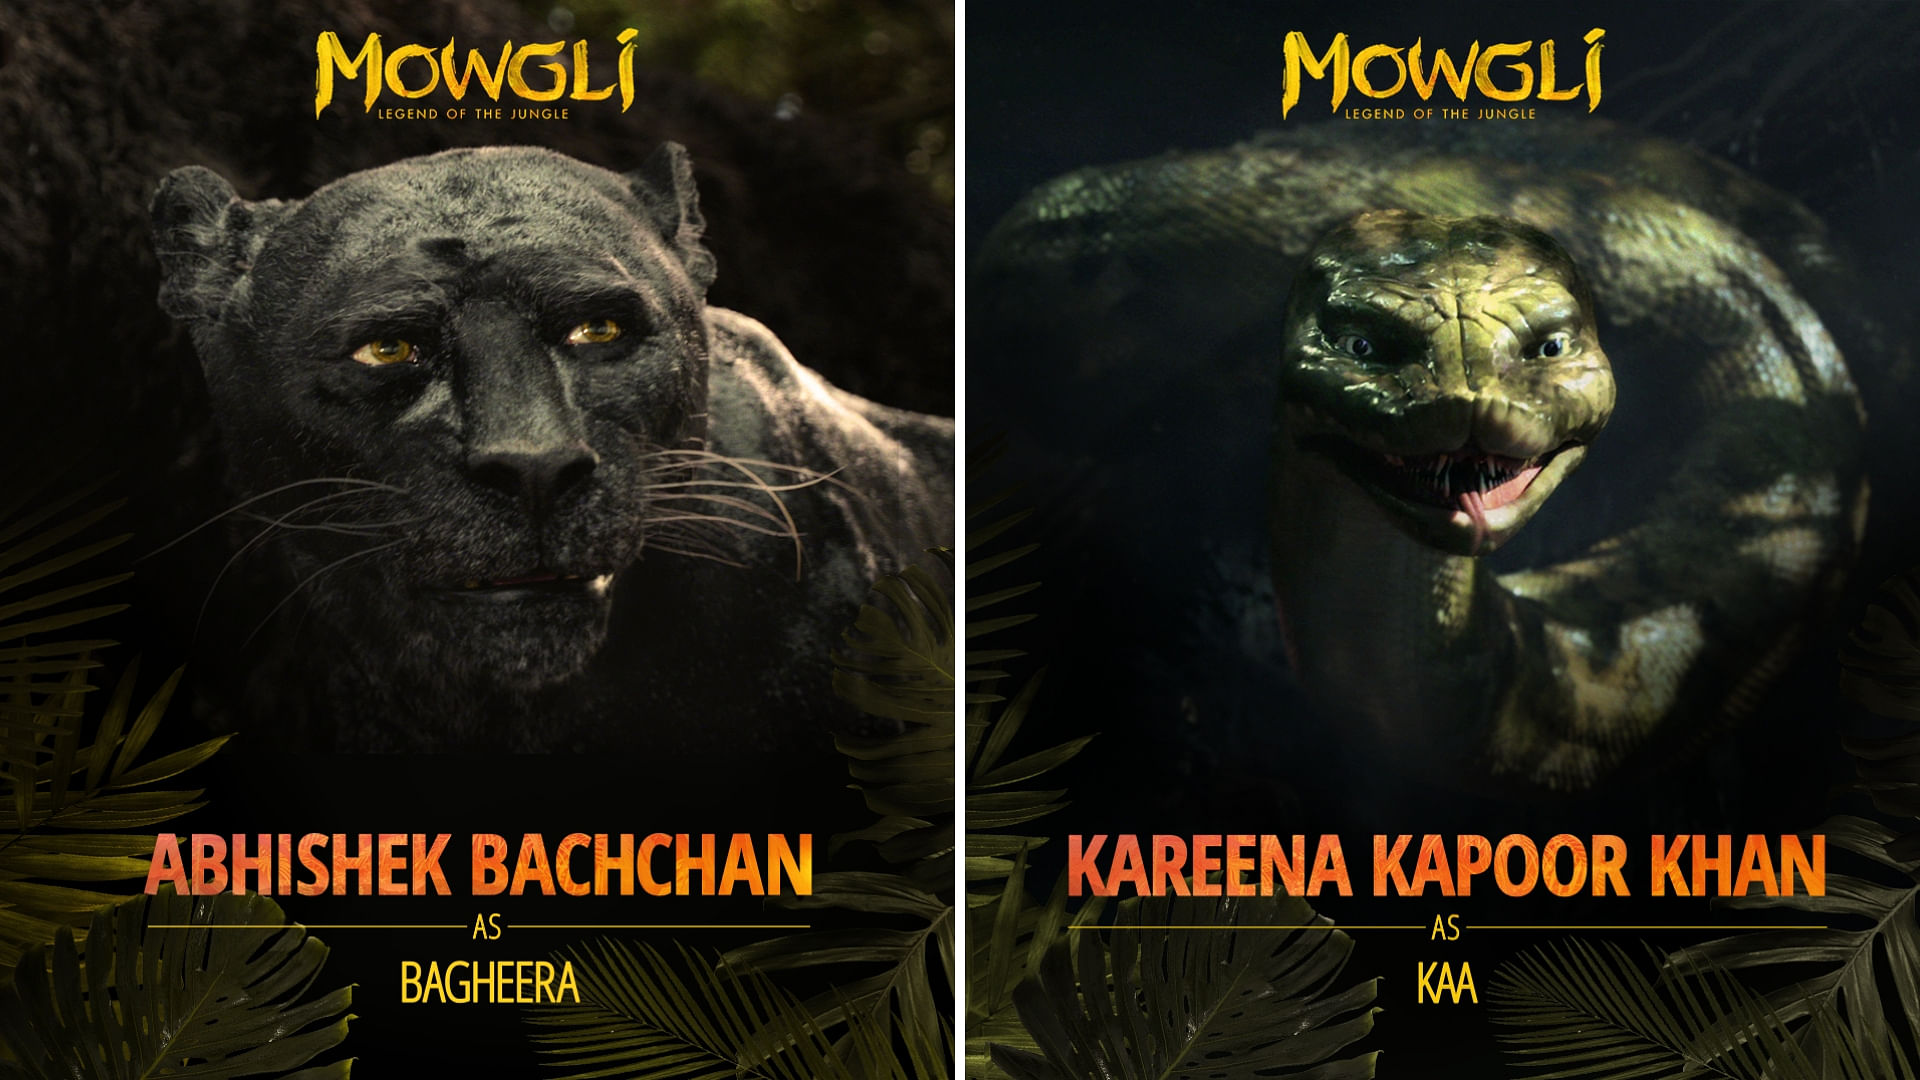 Netflix announces all-star&nbsp;<b>Hindi Talent for Original Film ‘</b><b><i>Mowgli: Legend of the Jungle’.</i></b>